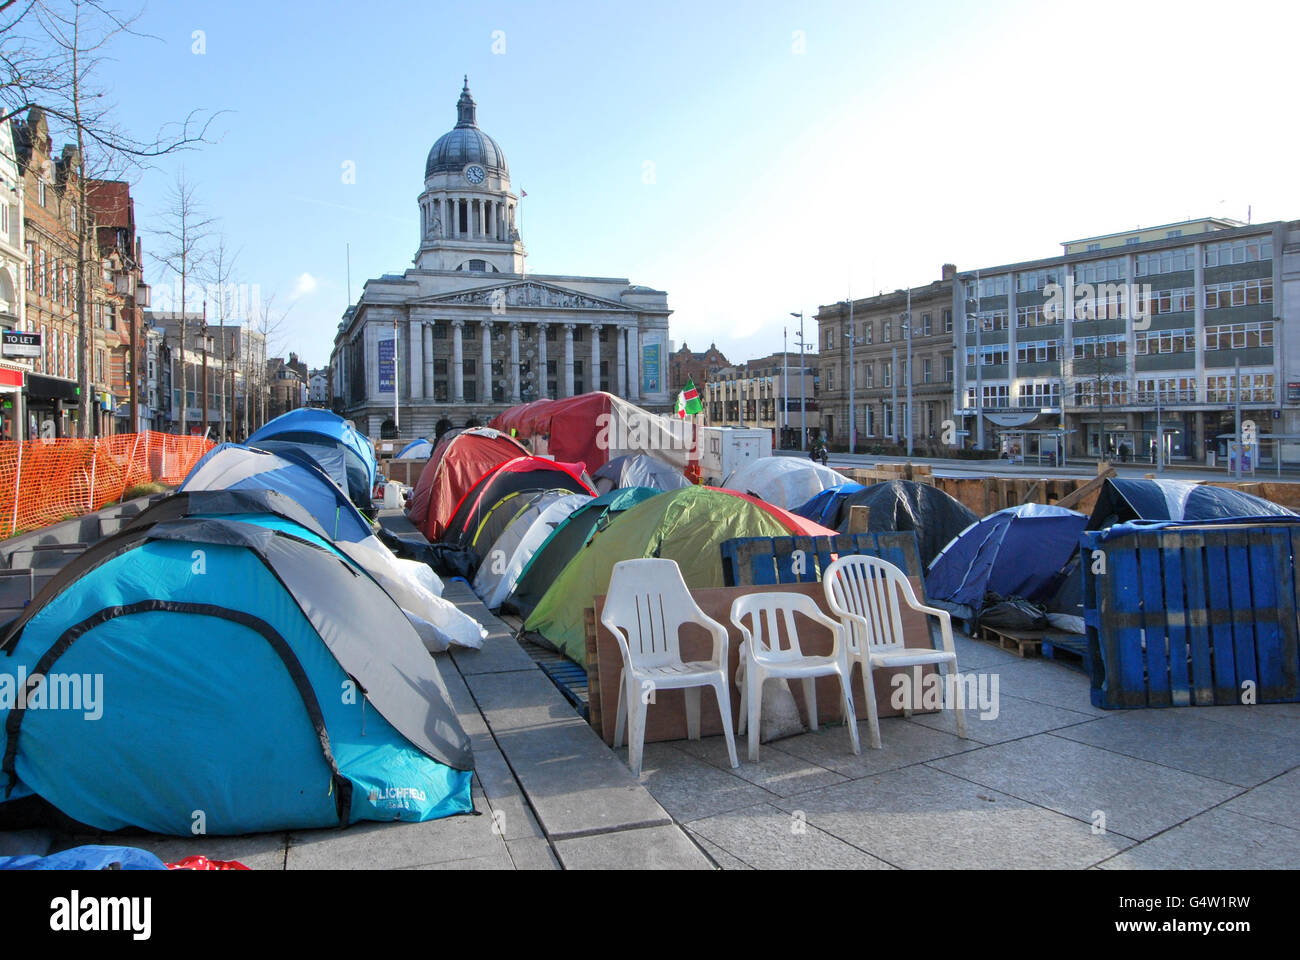 Una visione generale del campo Occupy Nottingham nel centro della città, come il 23 gennaio è il 100-giorno anniversario dell'occupazione del movimento della terra da parte della Cattedrale di St Paul, Londra, dove manifestanti hanno istituito il campo il 15 ottobre scorso. Foto Stock